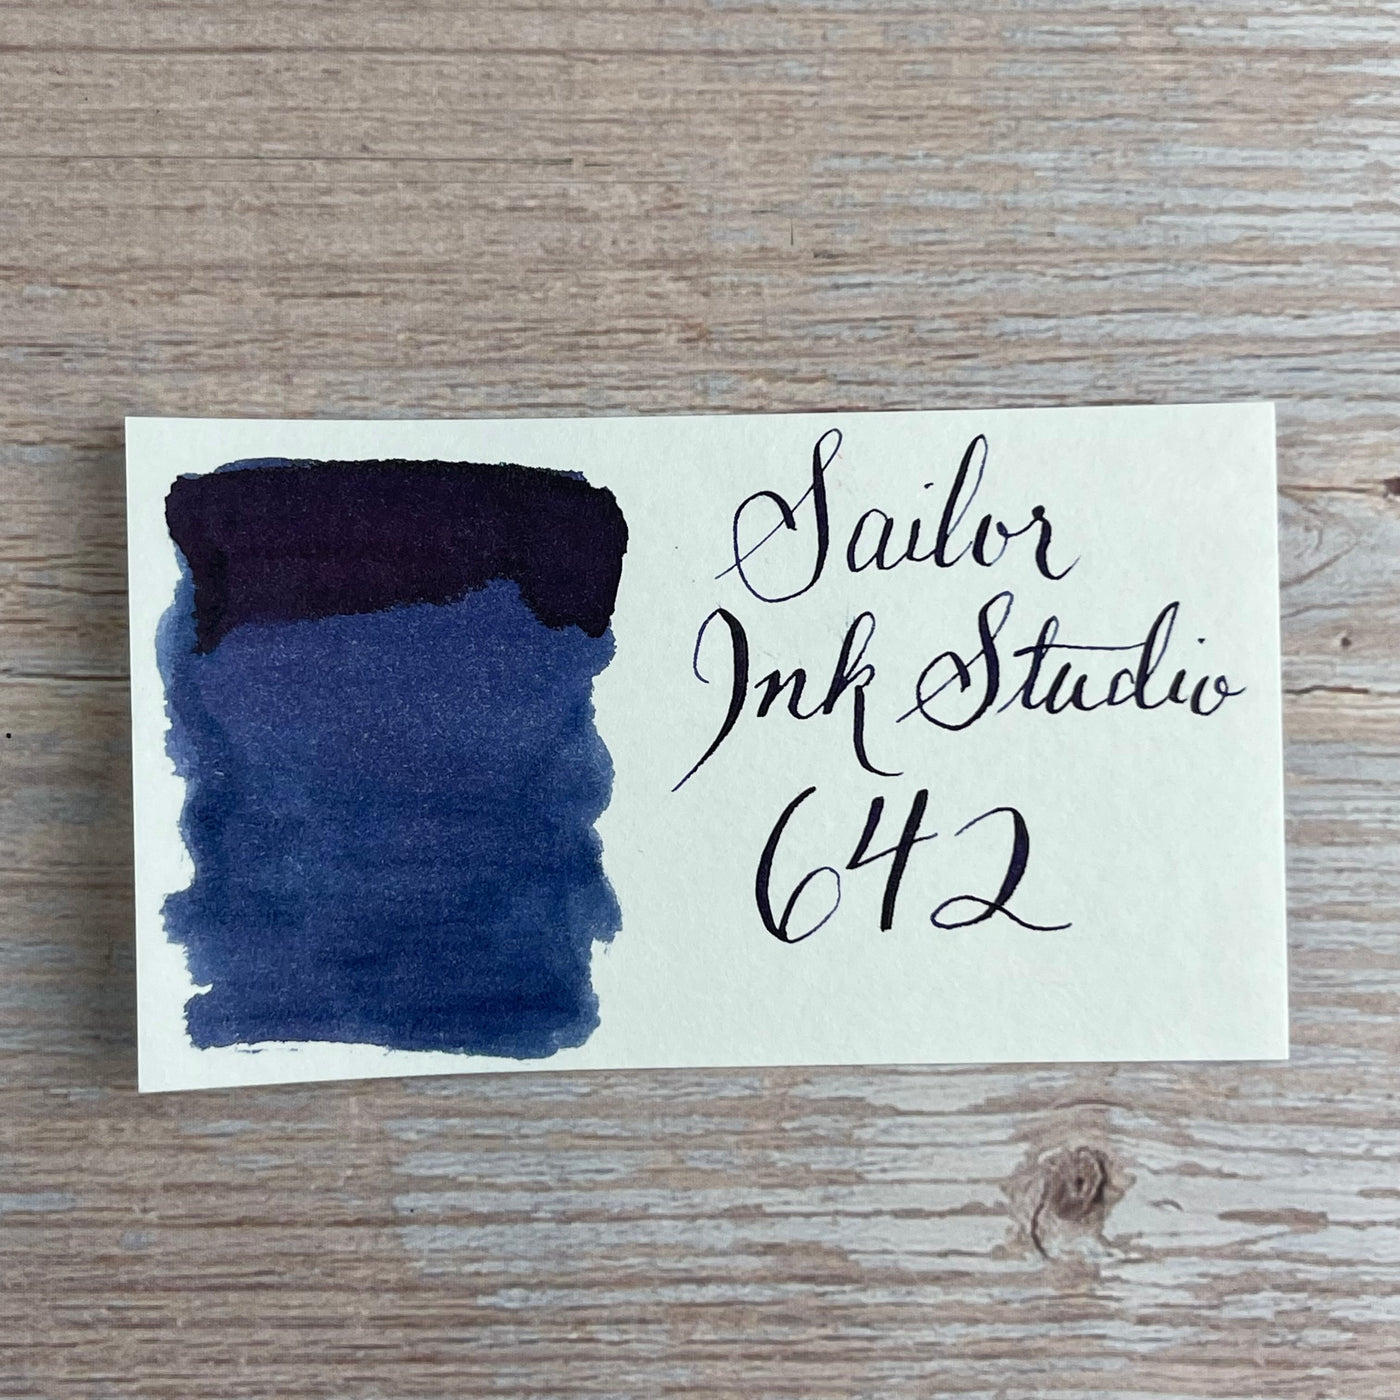 Sailor Ink Studio 20ml Bottled Ink - 642